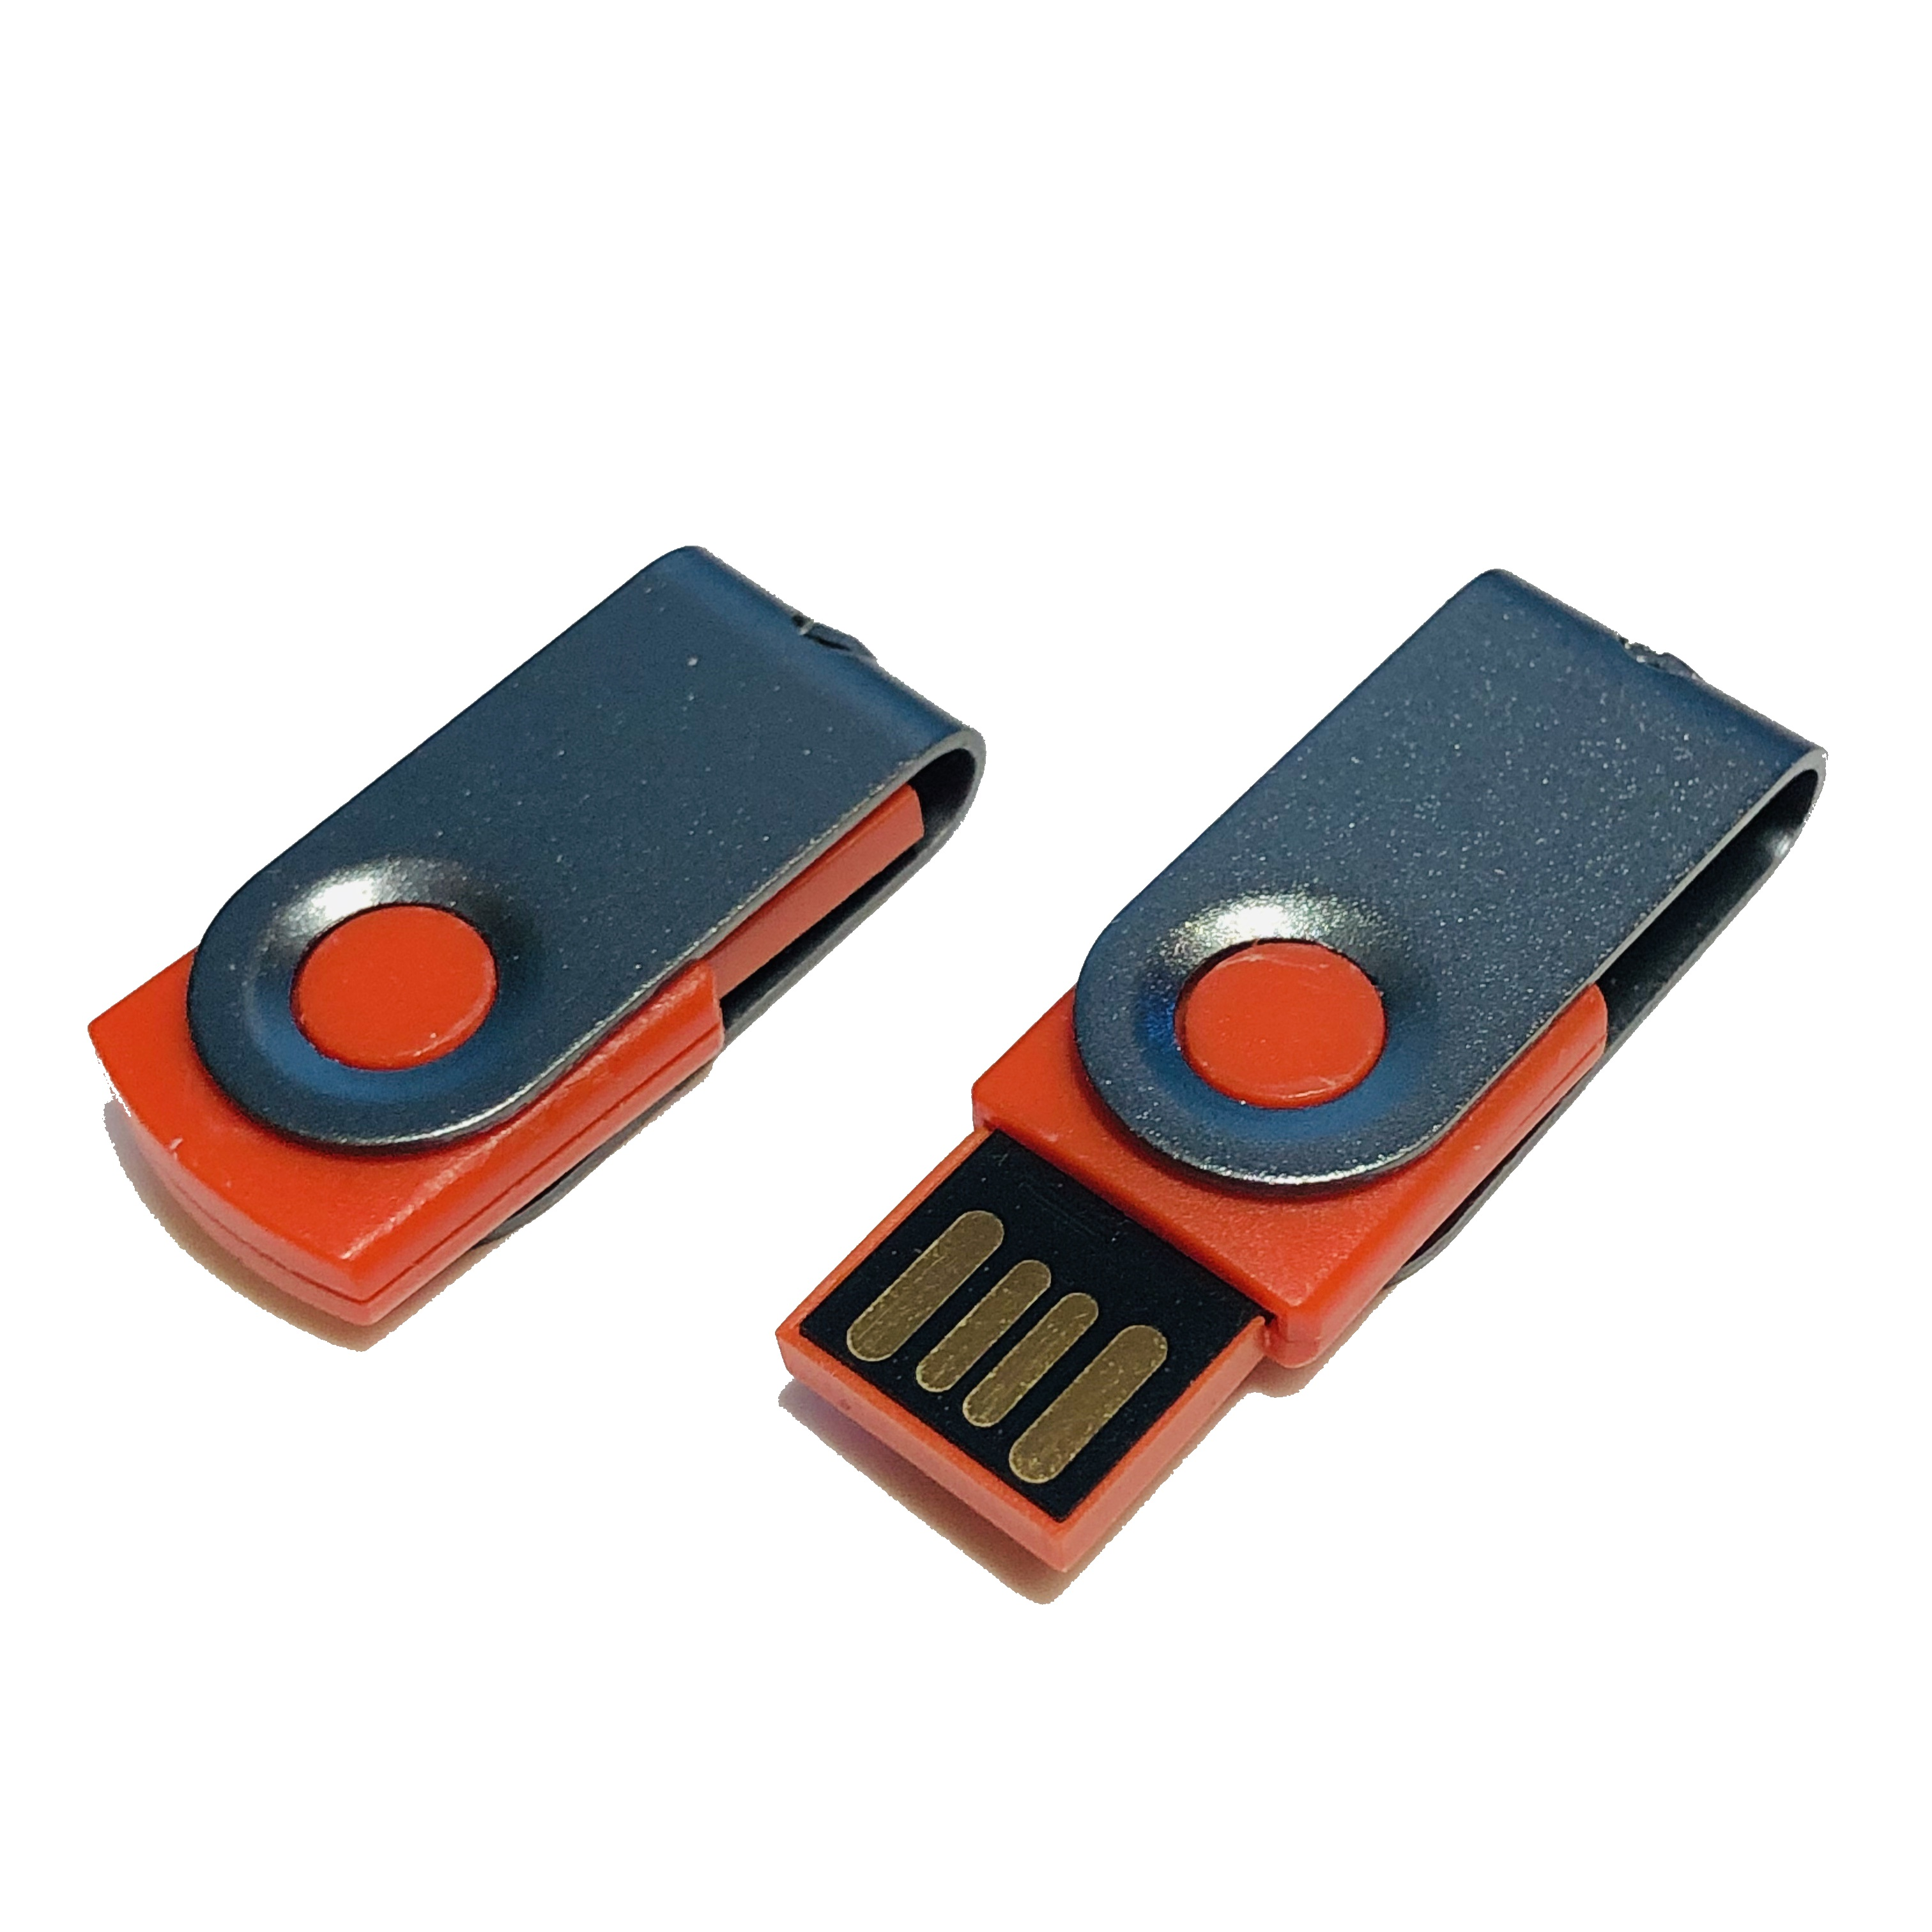 (Rot-Graumetall, GERMANY GB) MINI-SWIVEL 32 USB USB-Stick ®